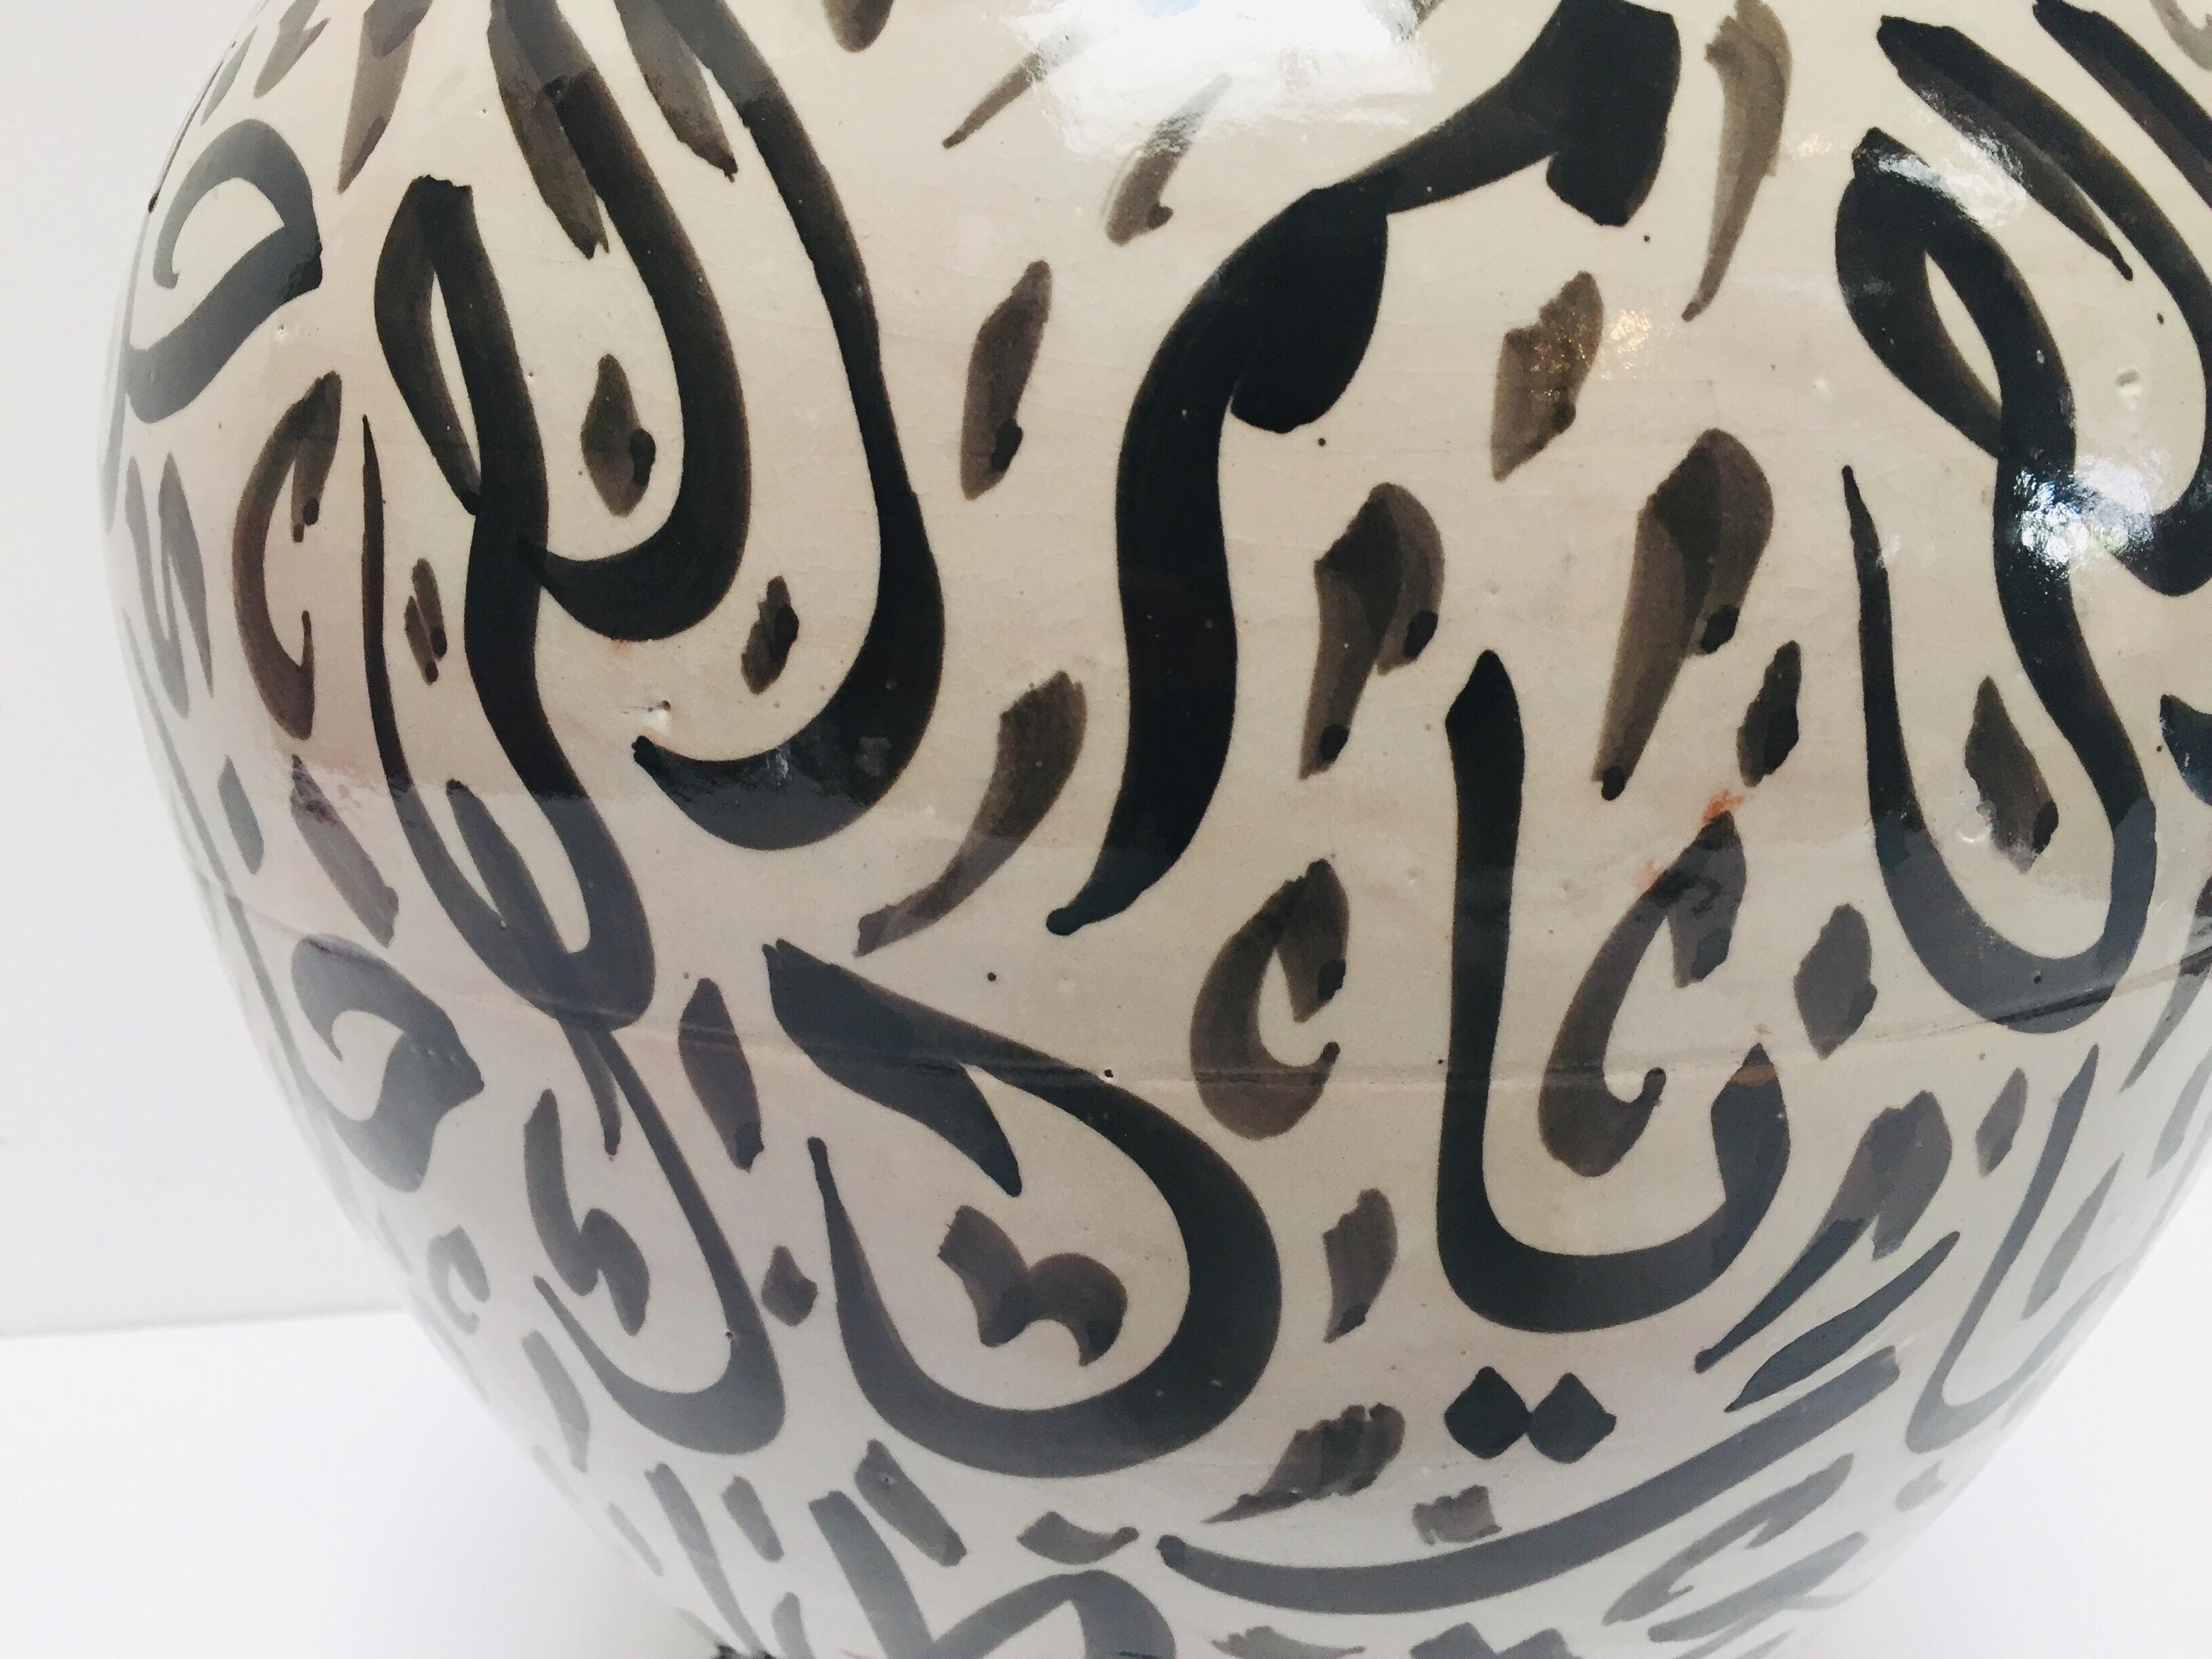 Large Moorish Glazed Ceramic Vase with Arabic Calligraphy Black Writing Fez For Sale 7